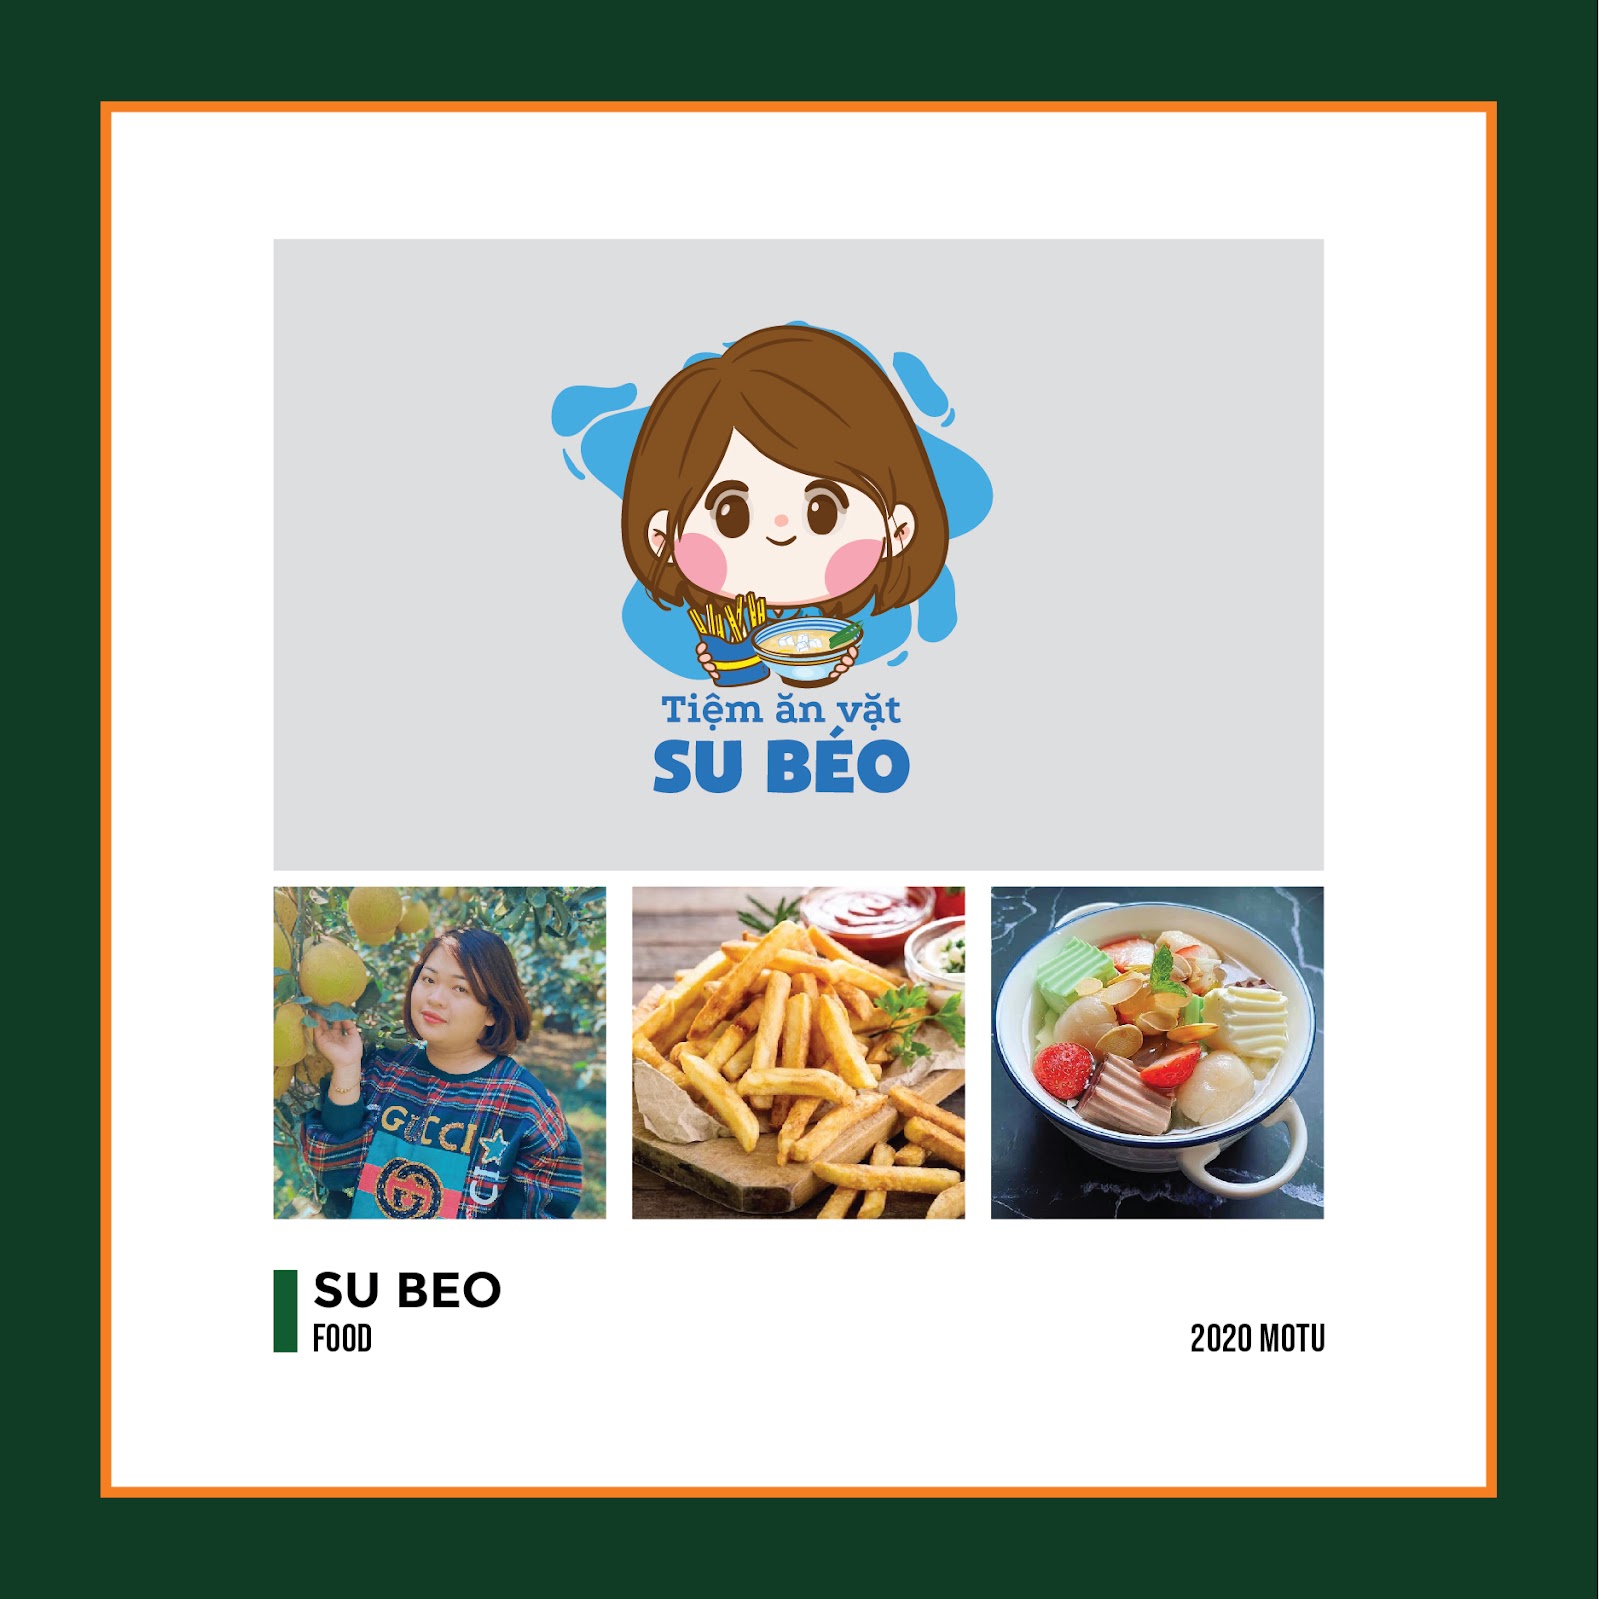 Mẫu thiết kế logo chibi cute Cửa hàng Tiệm ăn vặt Su Béo